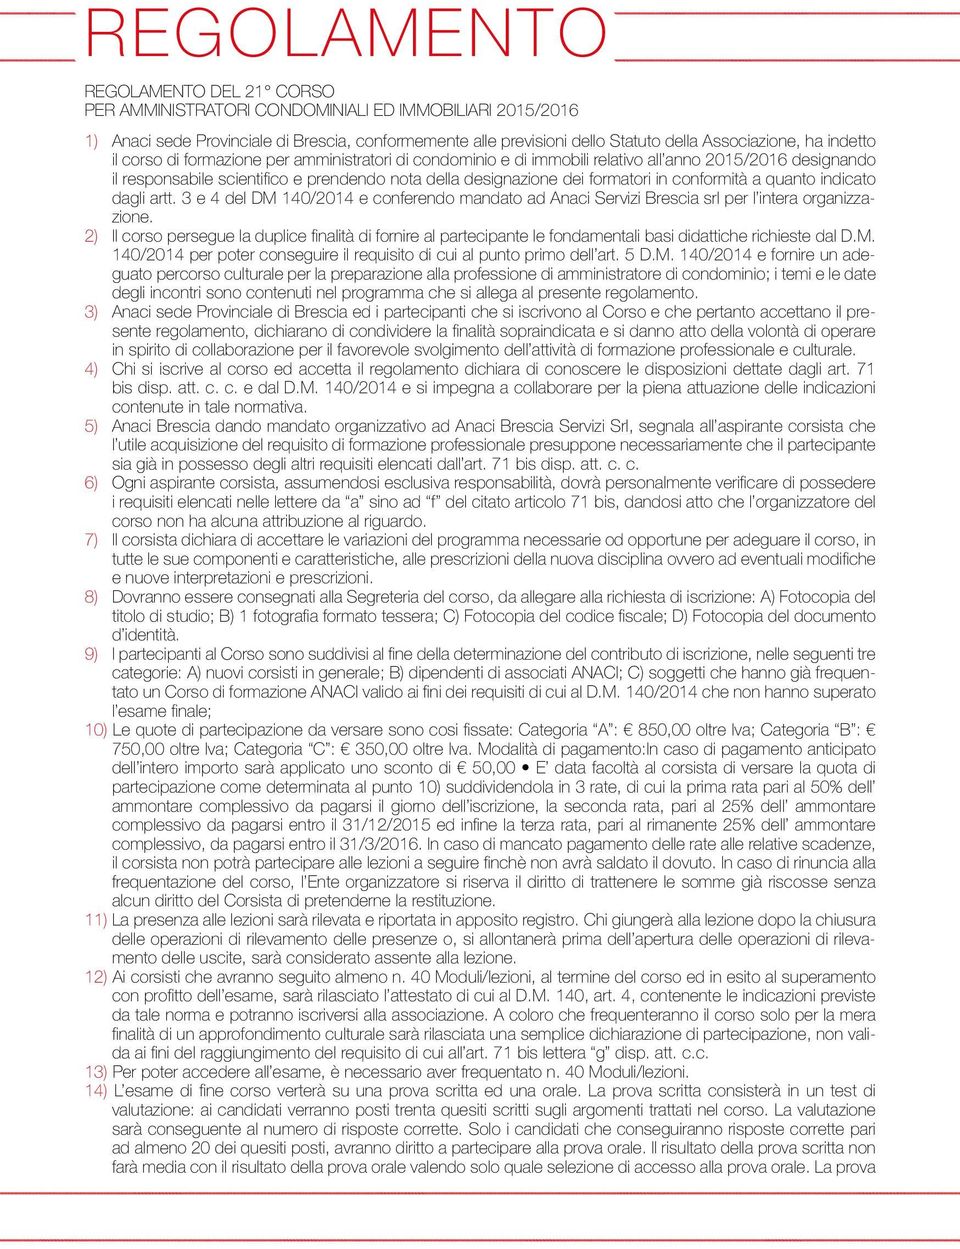 conformità a quanto indicato dagli artt. 3 e 4 del DM 140/2014 e conferendo mandato ad Anaci Servizi Brescia srl per l intera organizzazione.